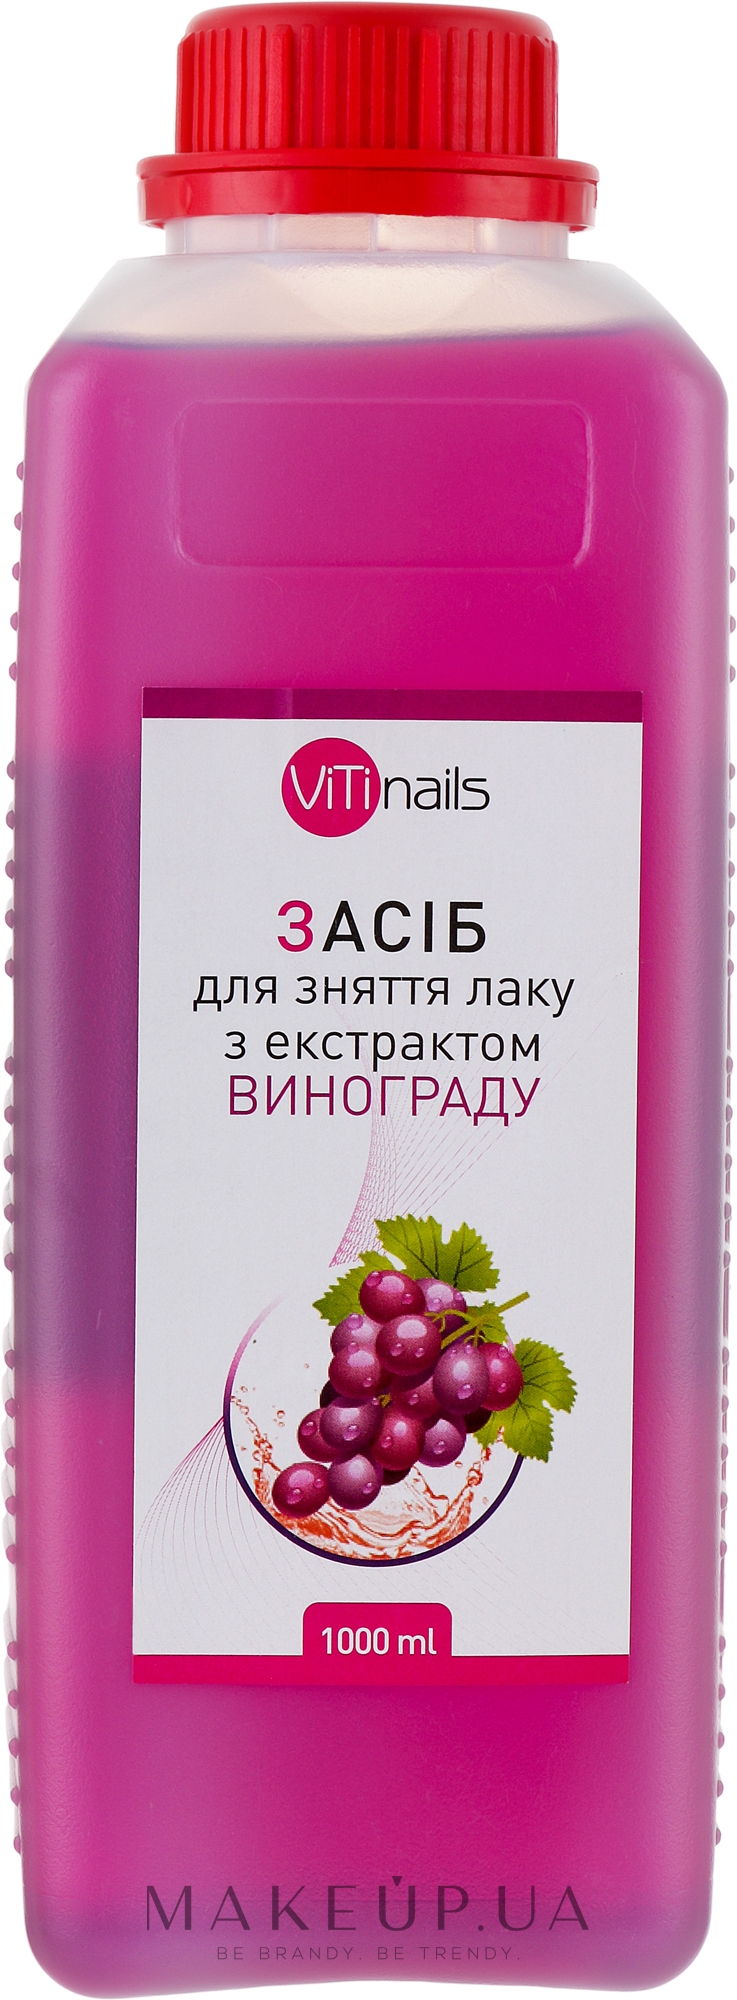 Жидкость для снятия лака с экстрактом винограда, крышка с контролем вскрытия - ViTinails — фото 1000ml